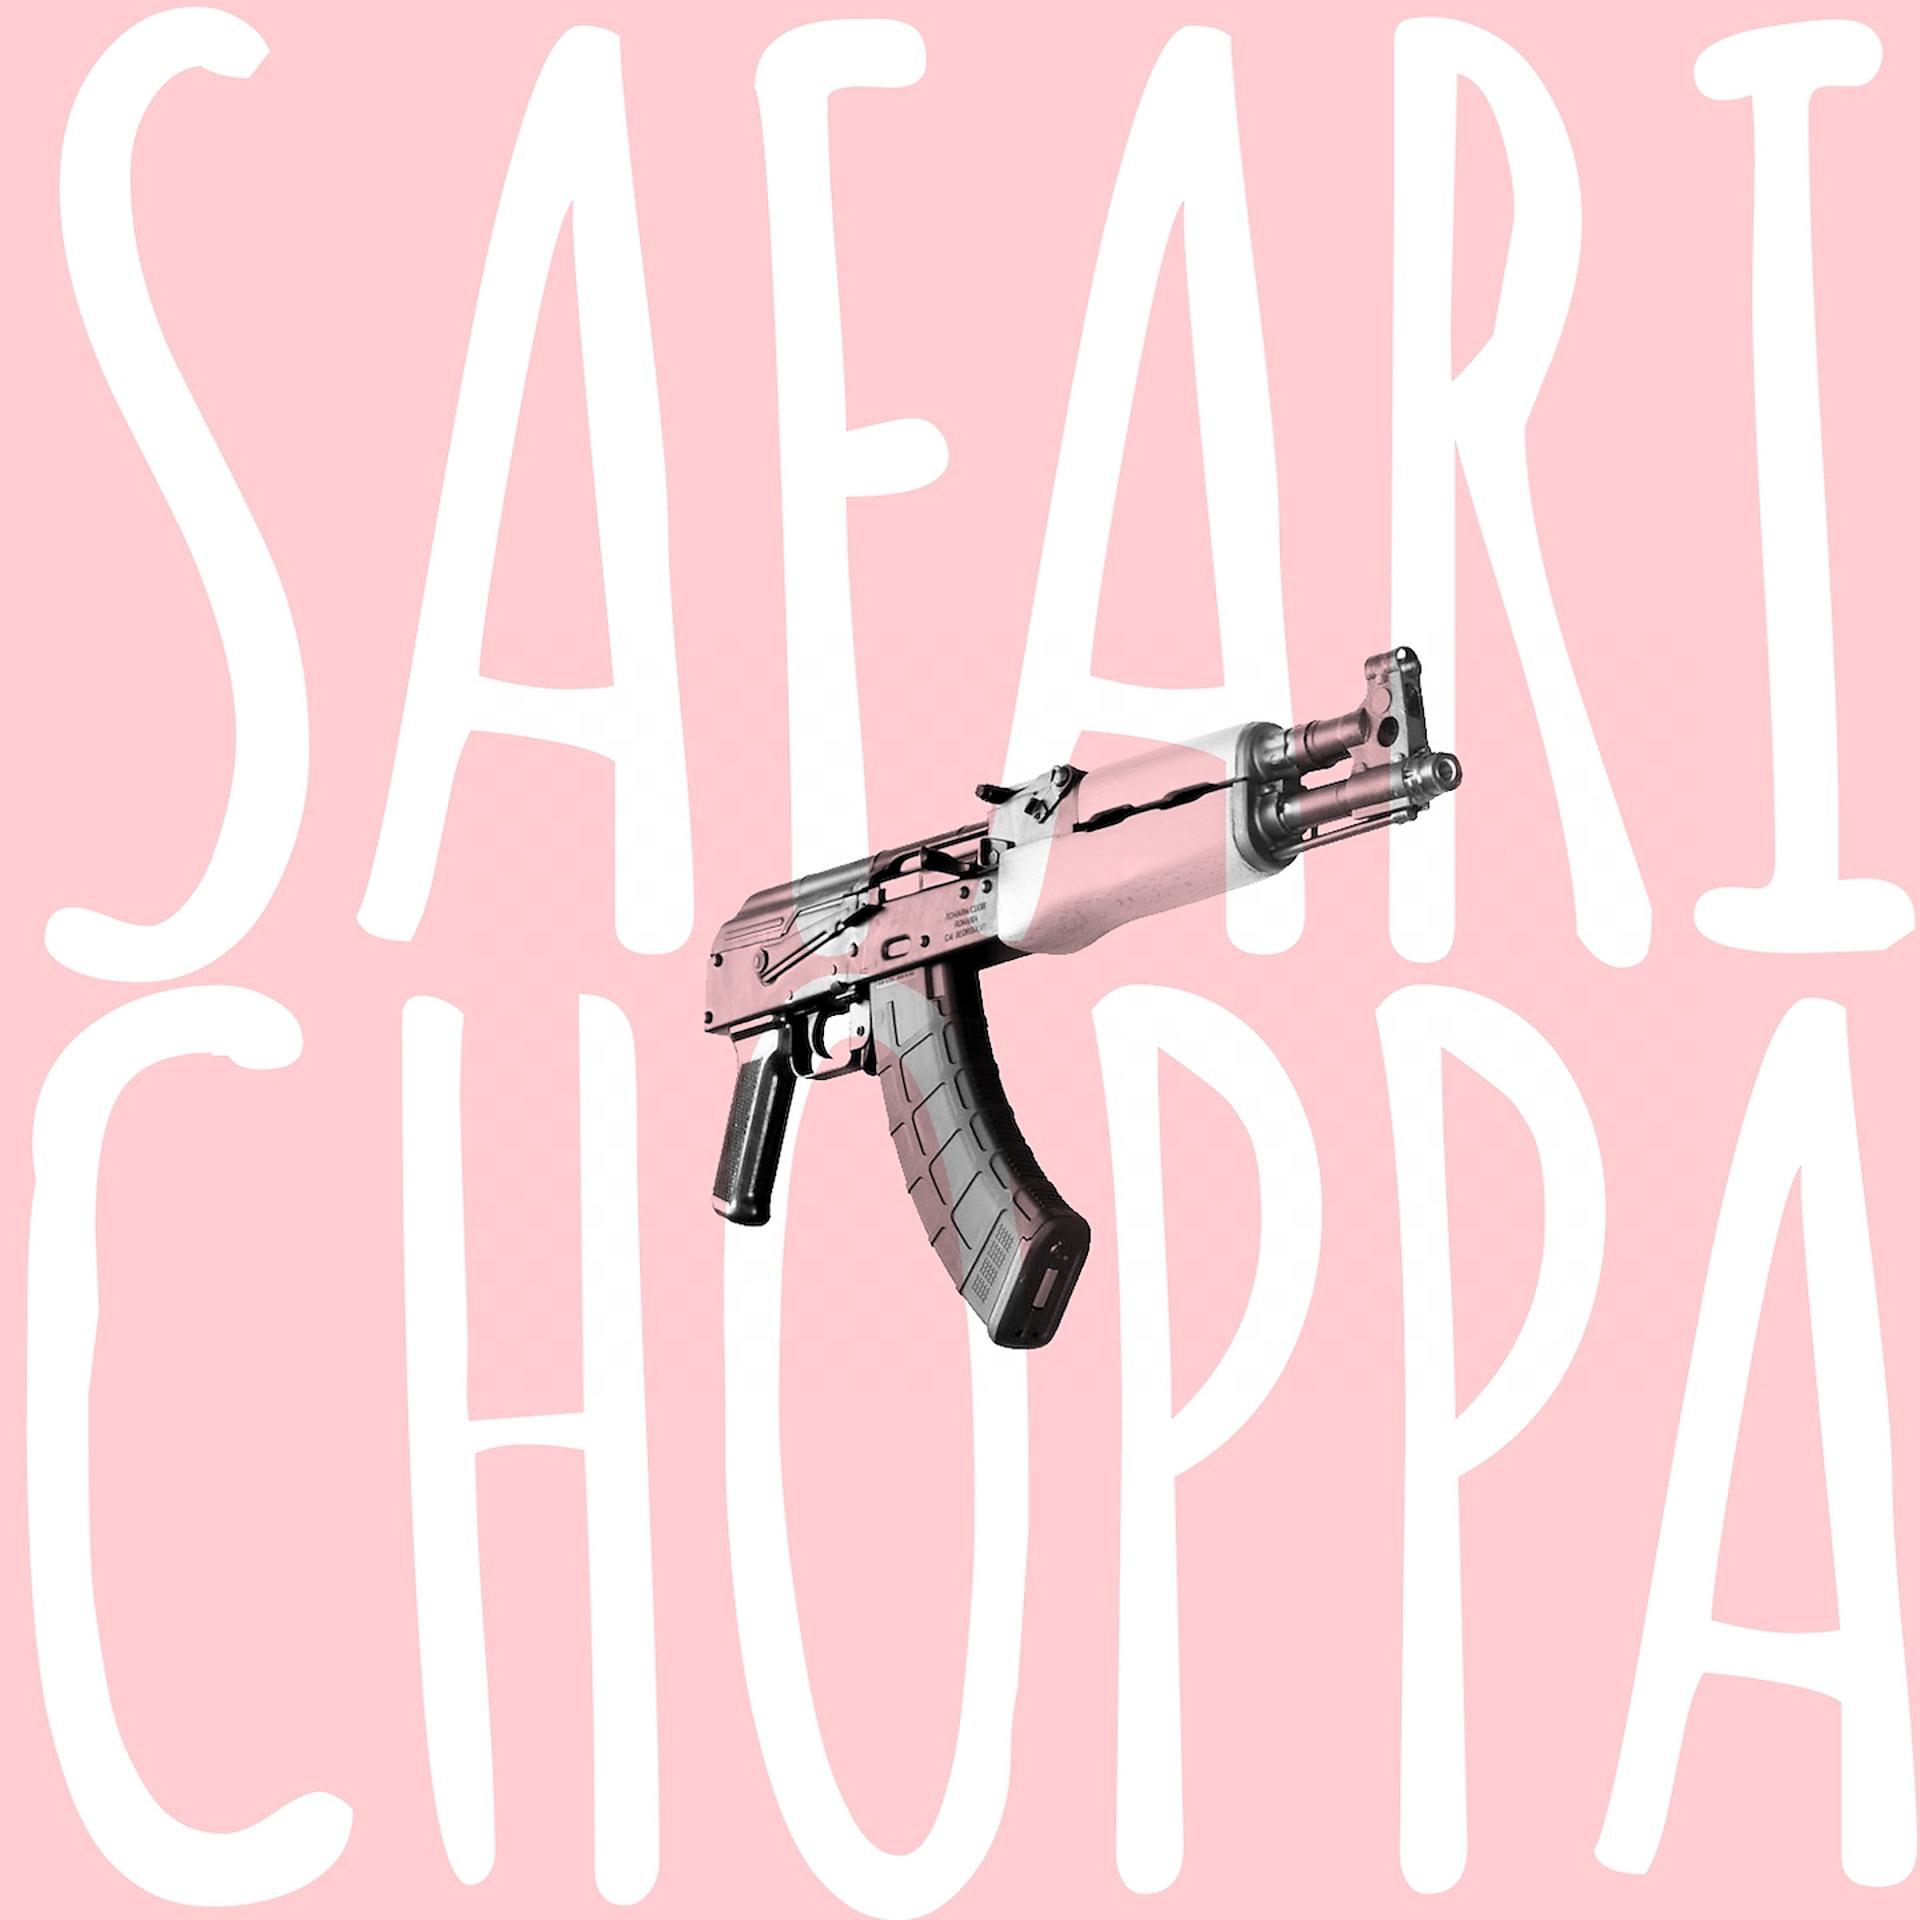 Постер альбома Choppa